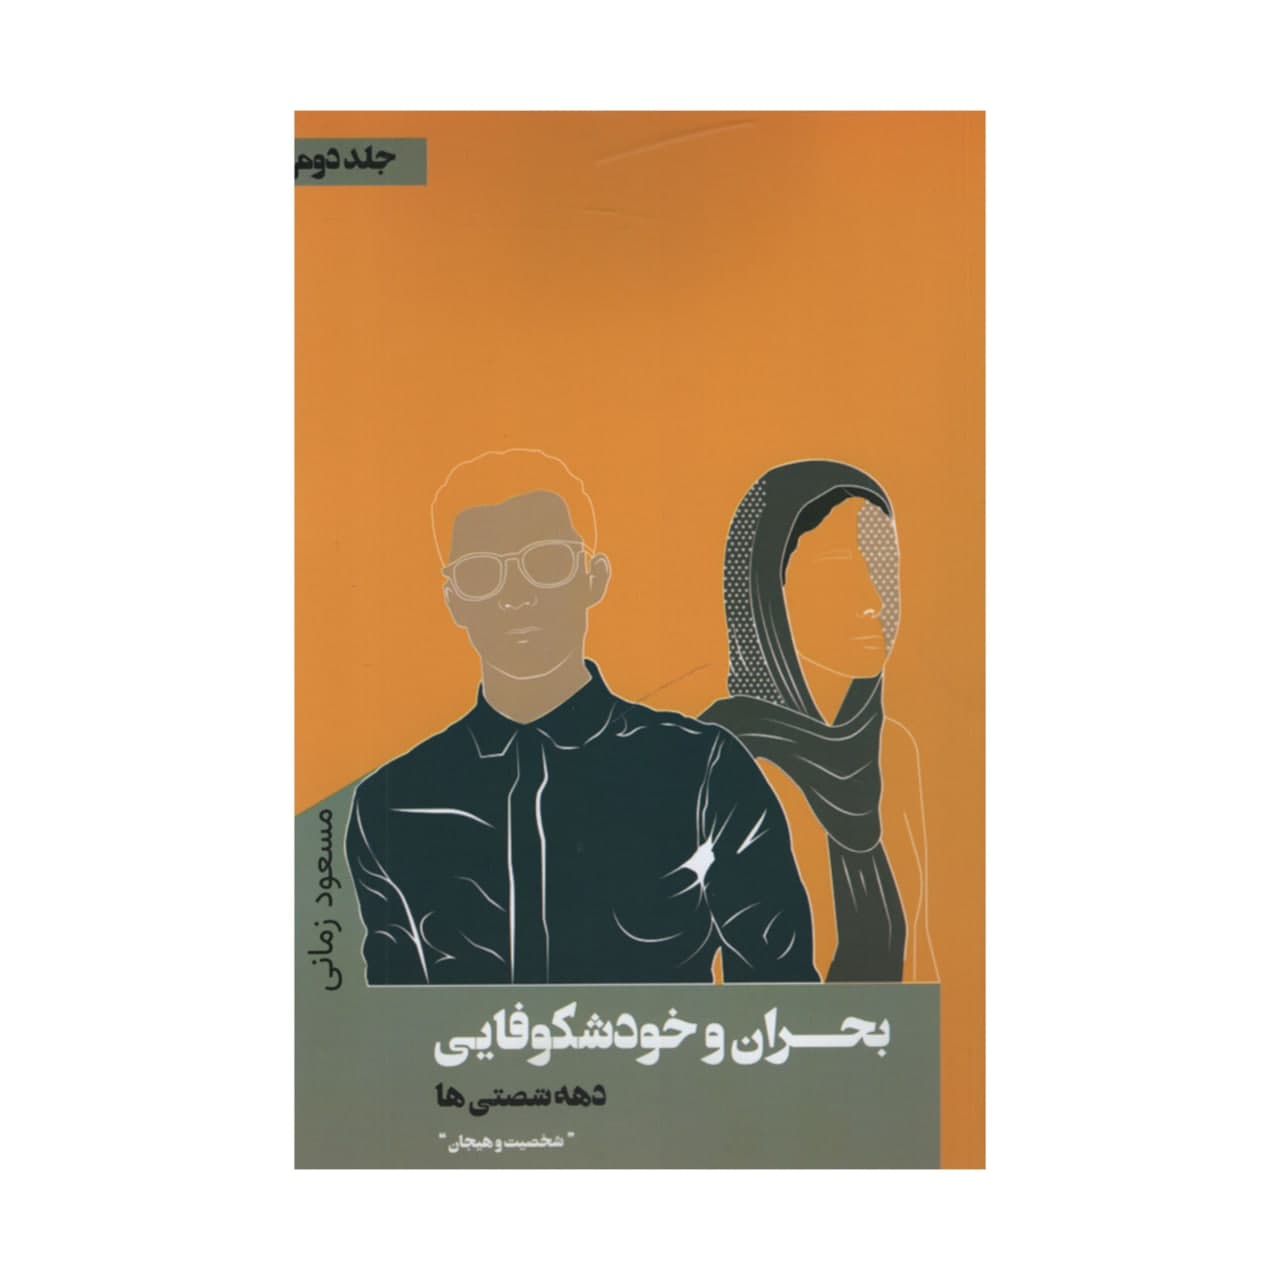 کتاب بحران و خودشکوفایی دهه شصتی ها اثر مسعود زمانی انتشارات نقد فرهنگ جلد 2